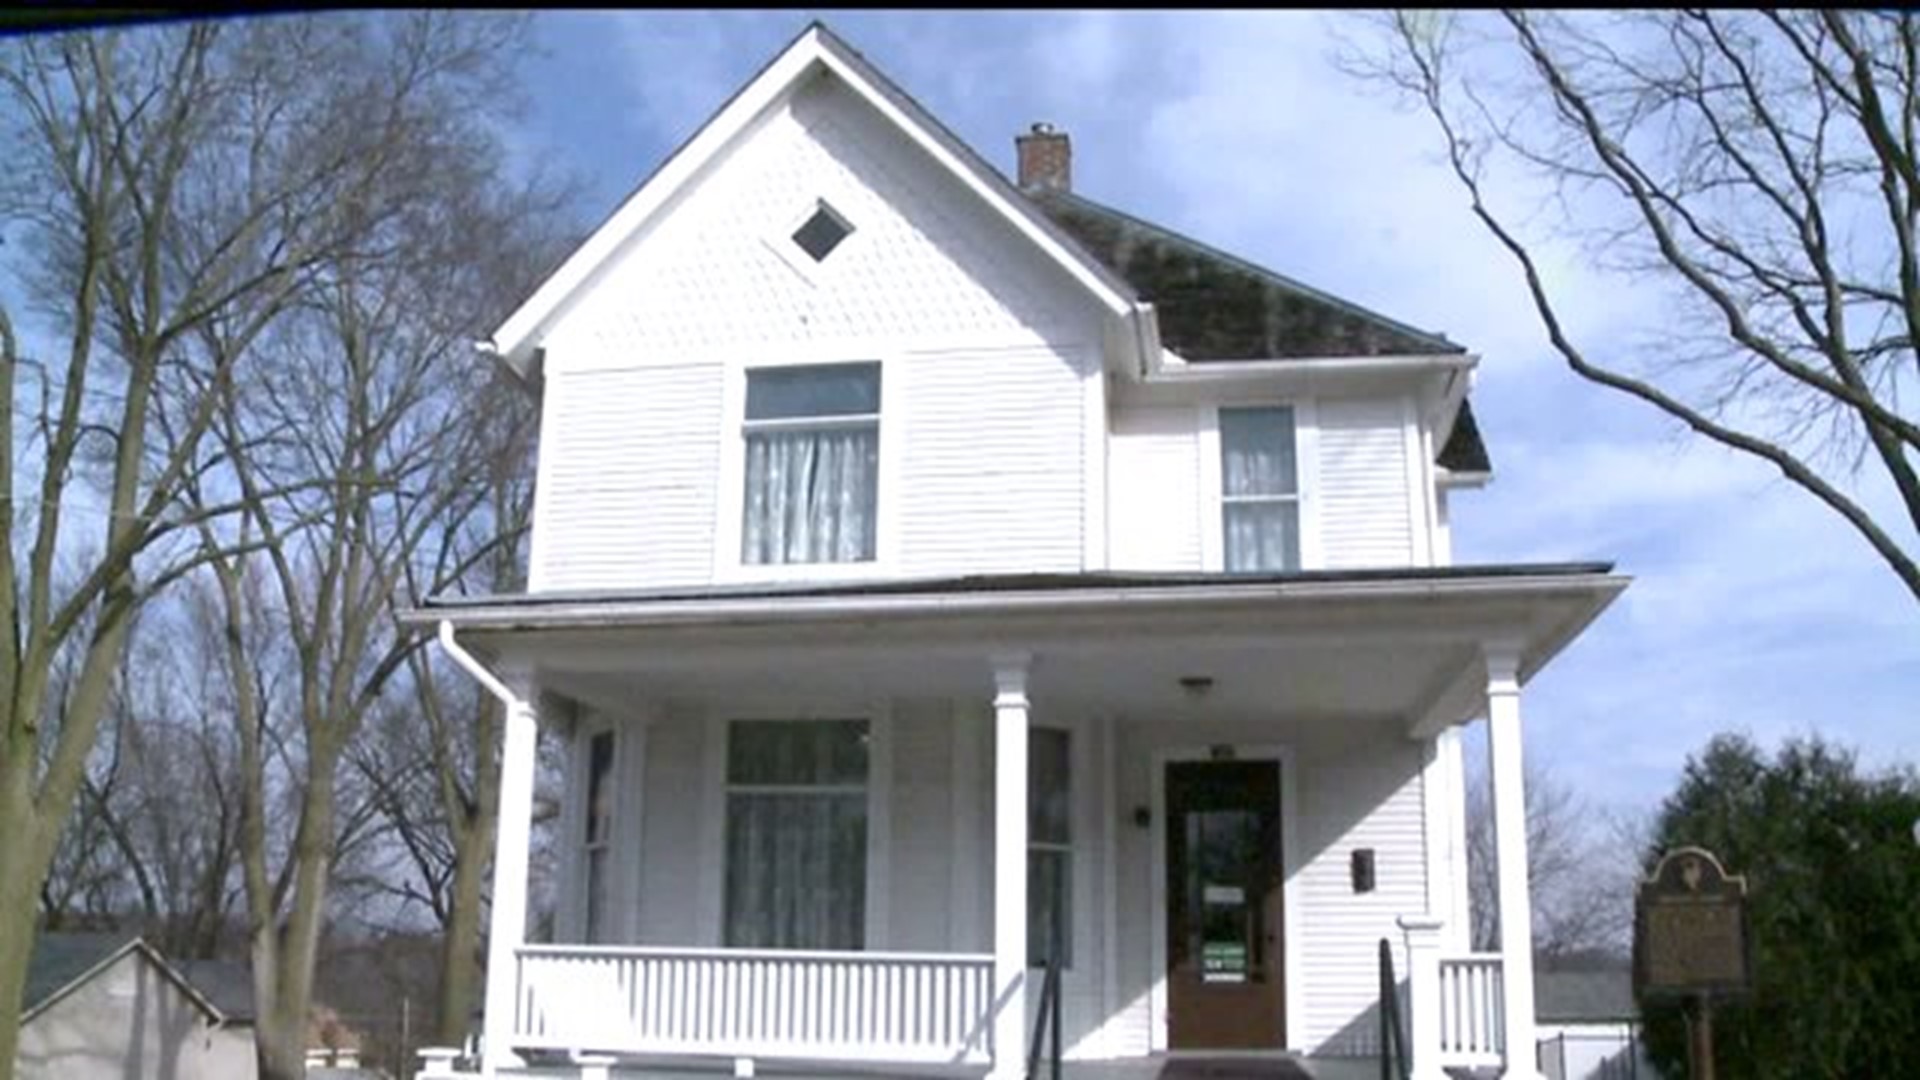 Reagan Home in Dixon, Illinois needs repairs